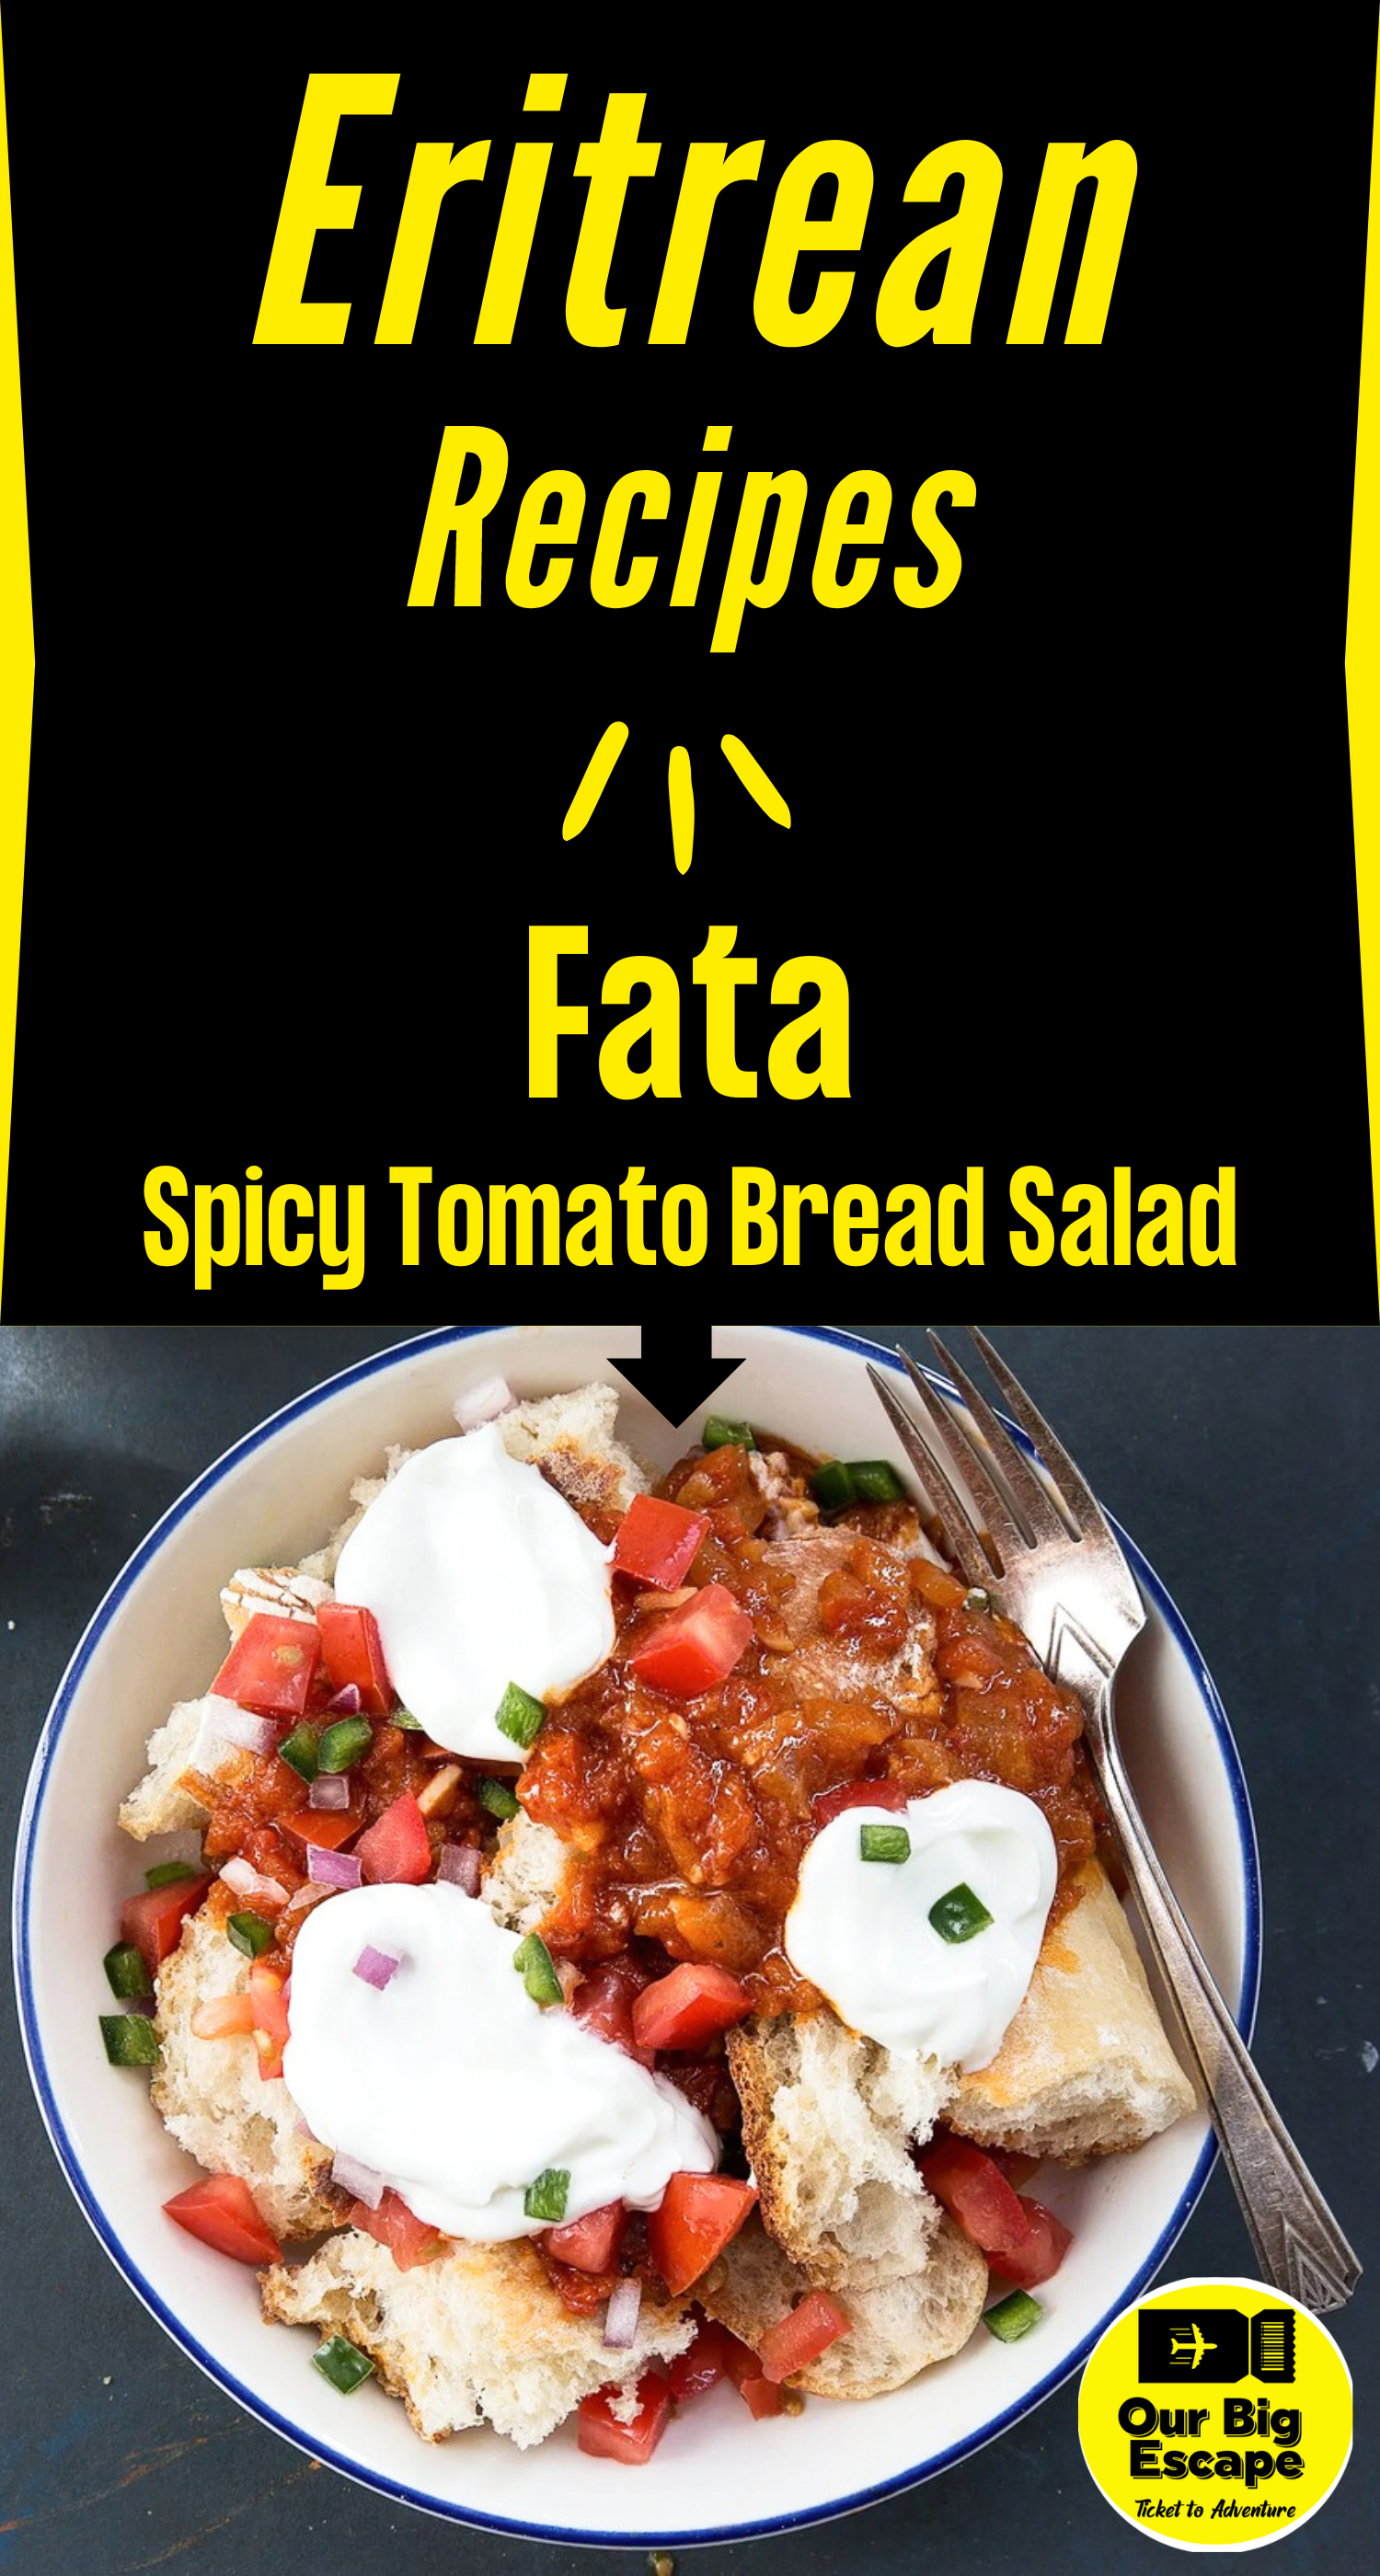 Eritrean Recipes - Fata (Spicy Tomato Bread Salad with Yogurt)